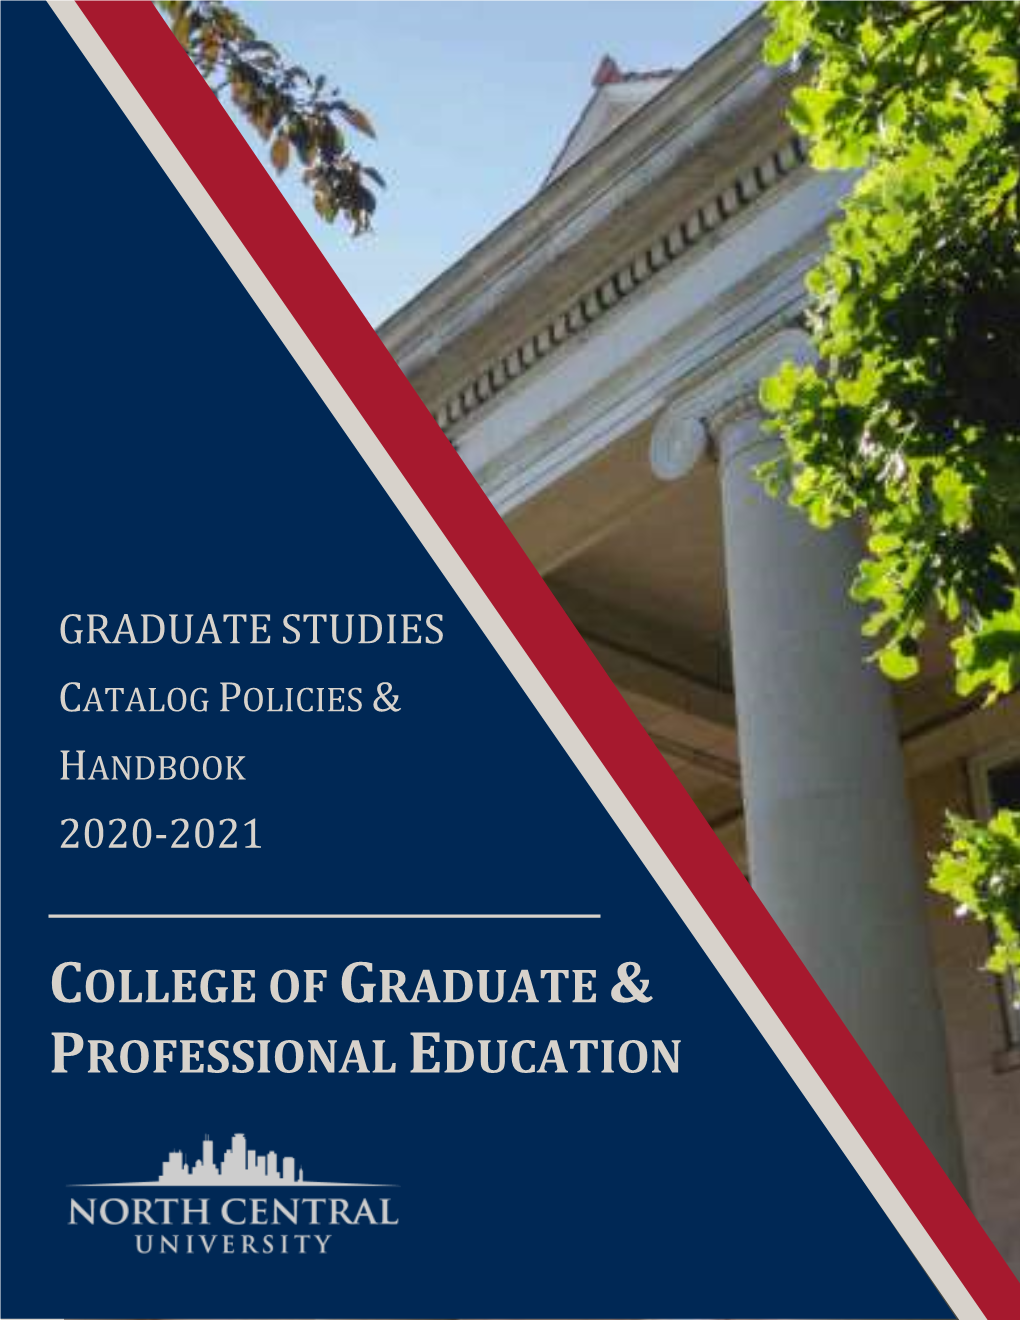 Review the Graduate Program Catalog